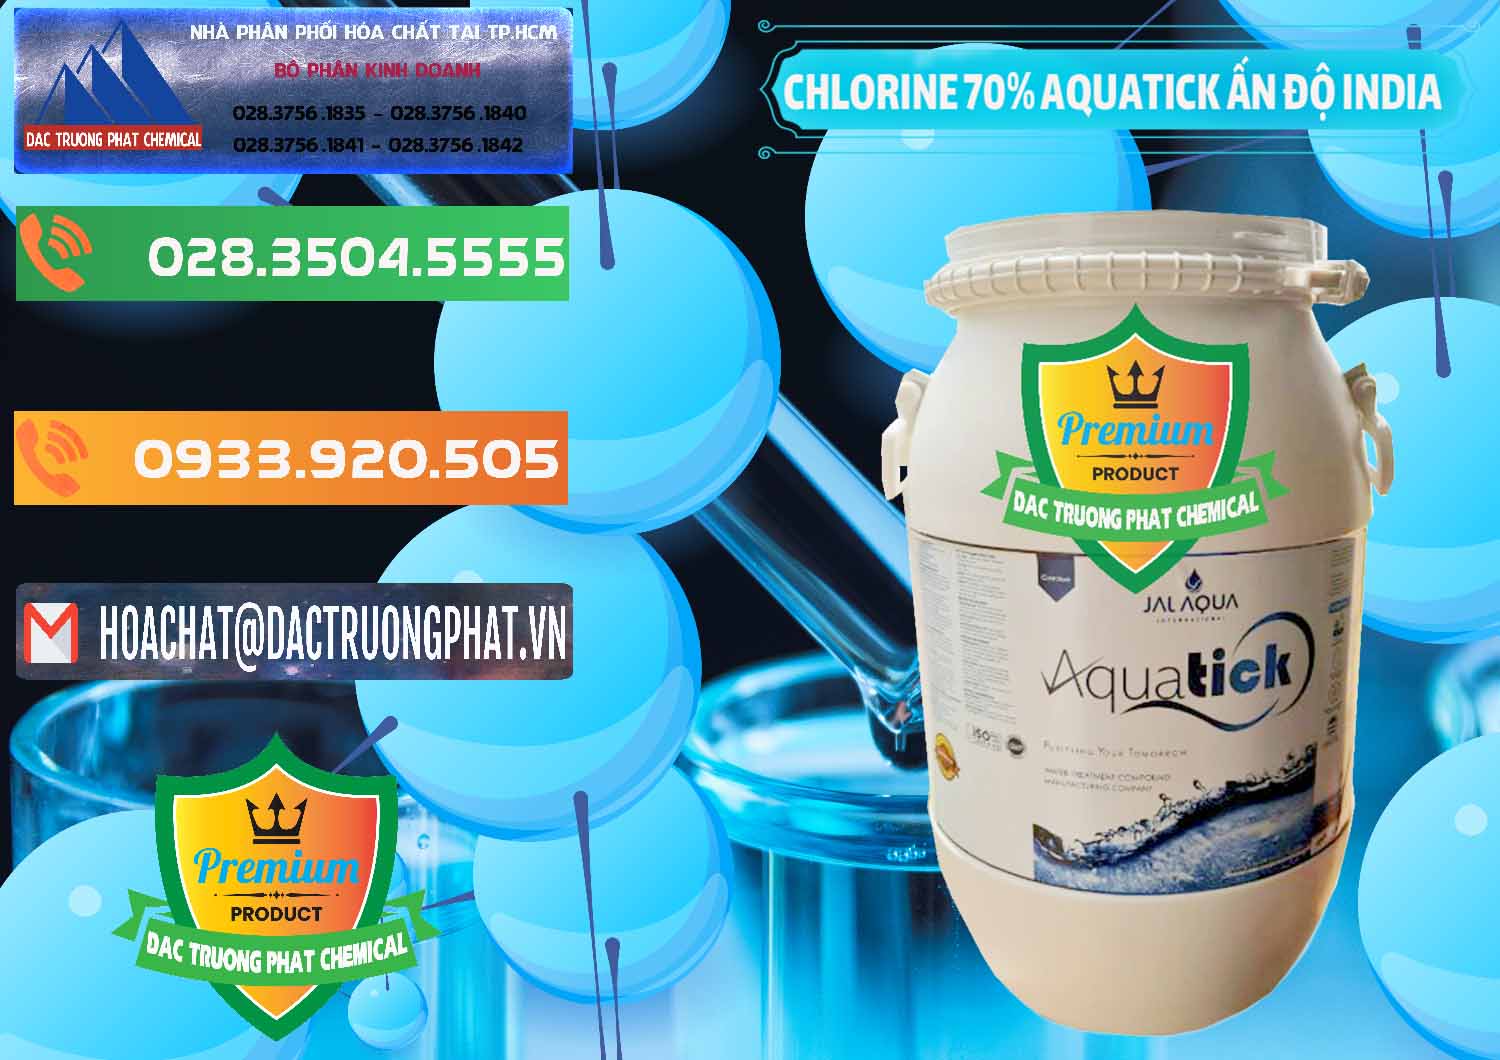 Cty chuyên cung cấp - bán Chlorine – Clorin 70% Aquatick Jal Aqua Ấn Độ India - 0215 - Nhà cung cấp và nhập khẩu hóa chất tại TP.HCM - hoachatxulynuoc.com.vn